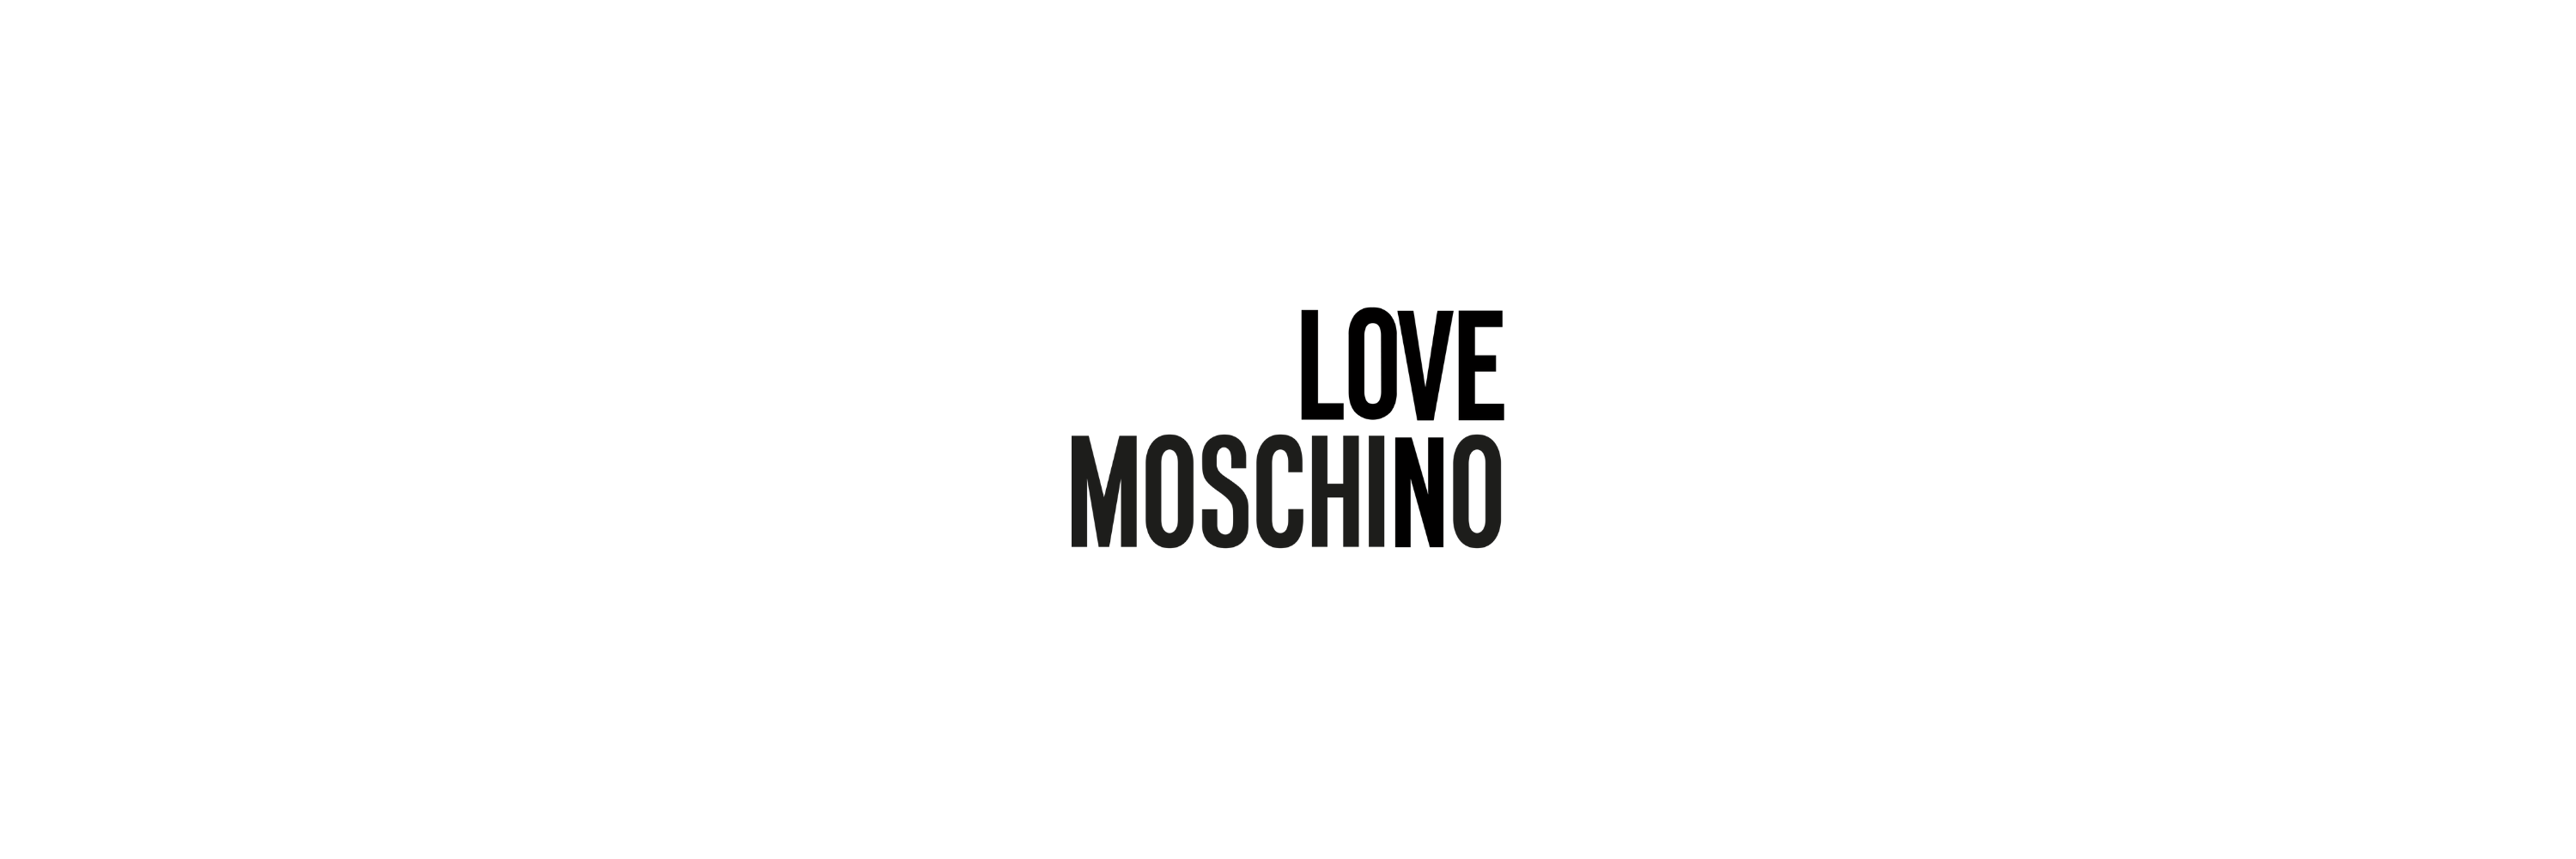 Calzature Love Moschino